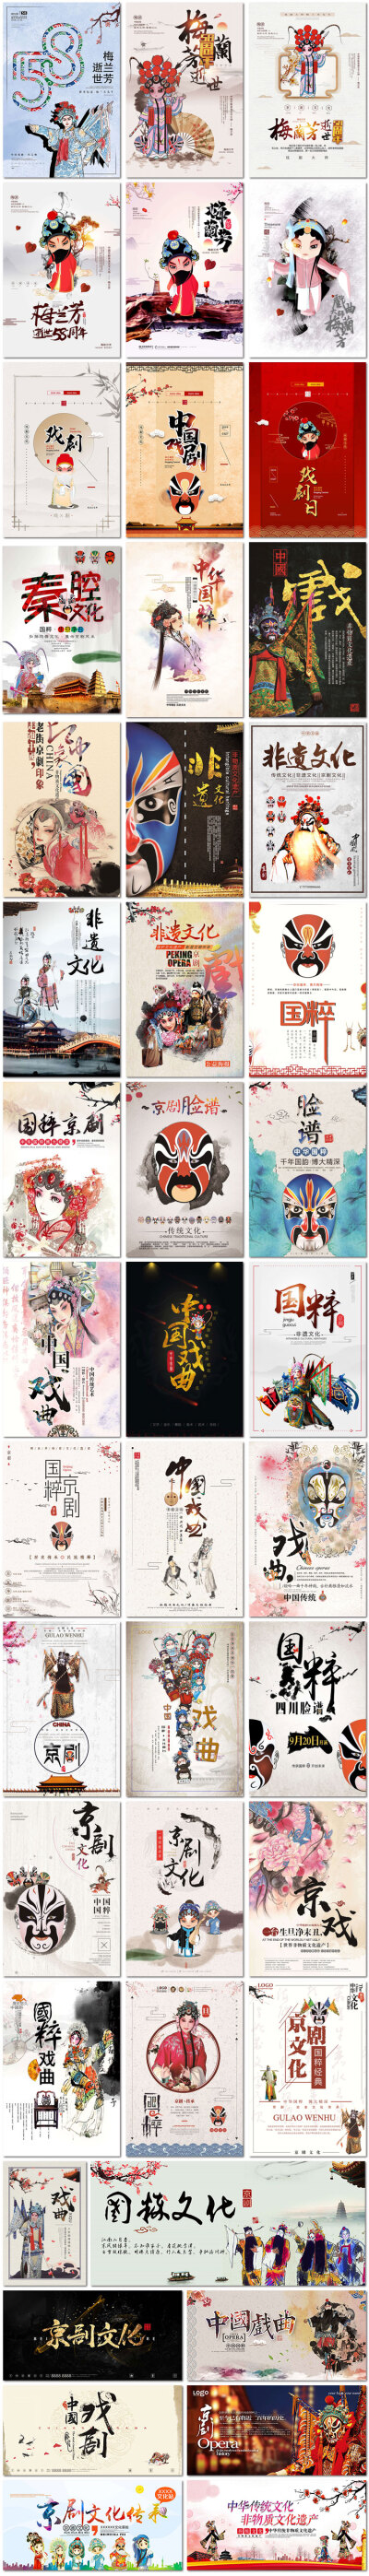 世界戏剧日中国风传统文化艺术京剧戏曲脸谱psd海报模板设计素材